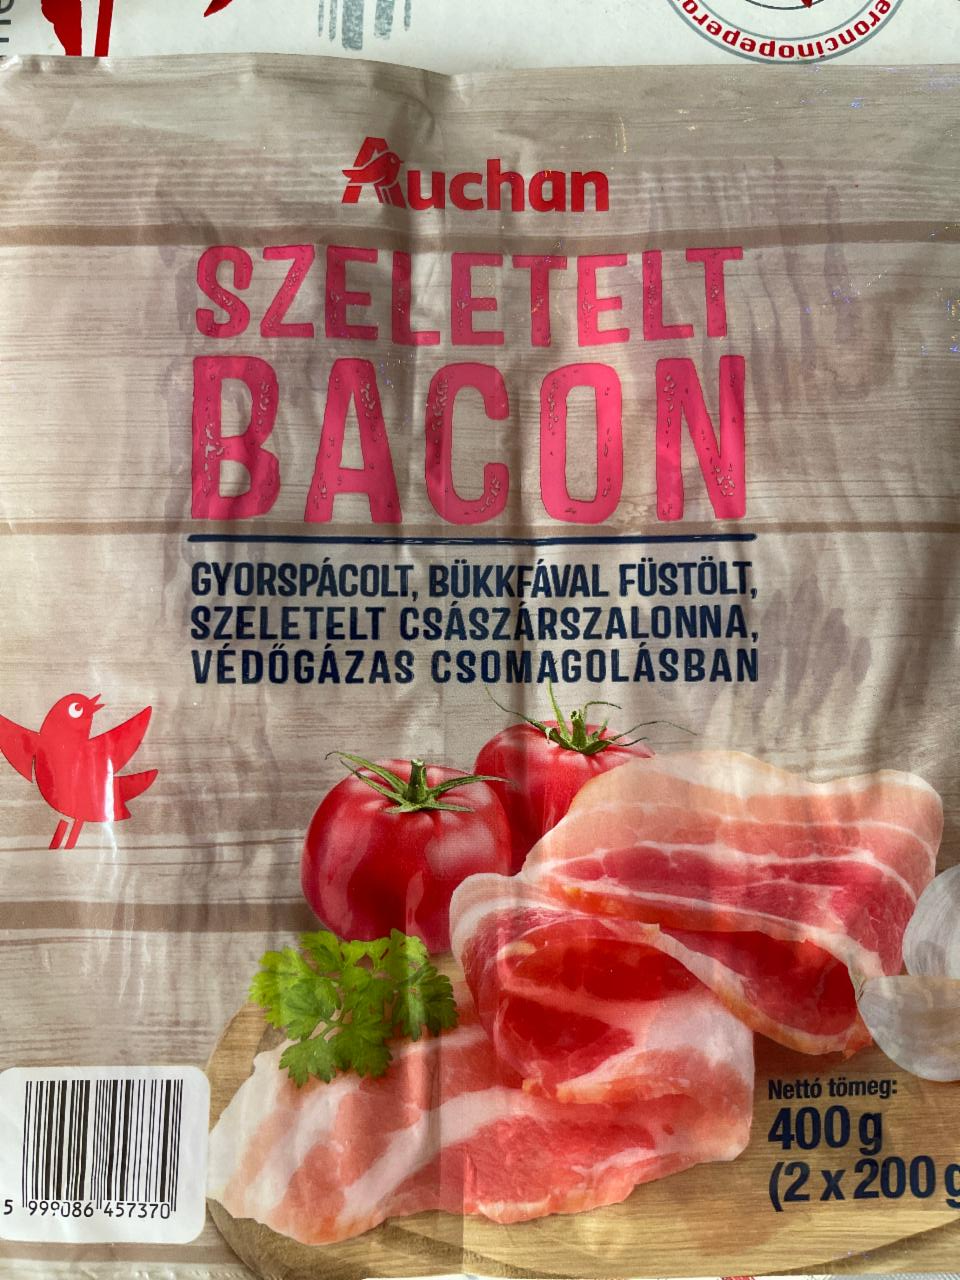 Képek - Szeletelt bacon Auchan